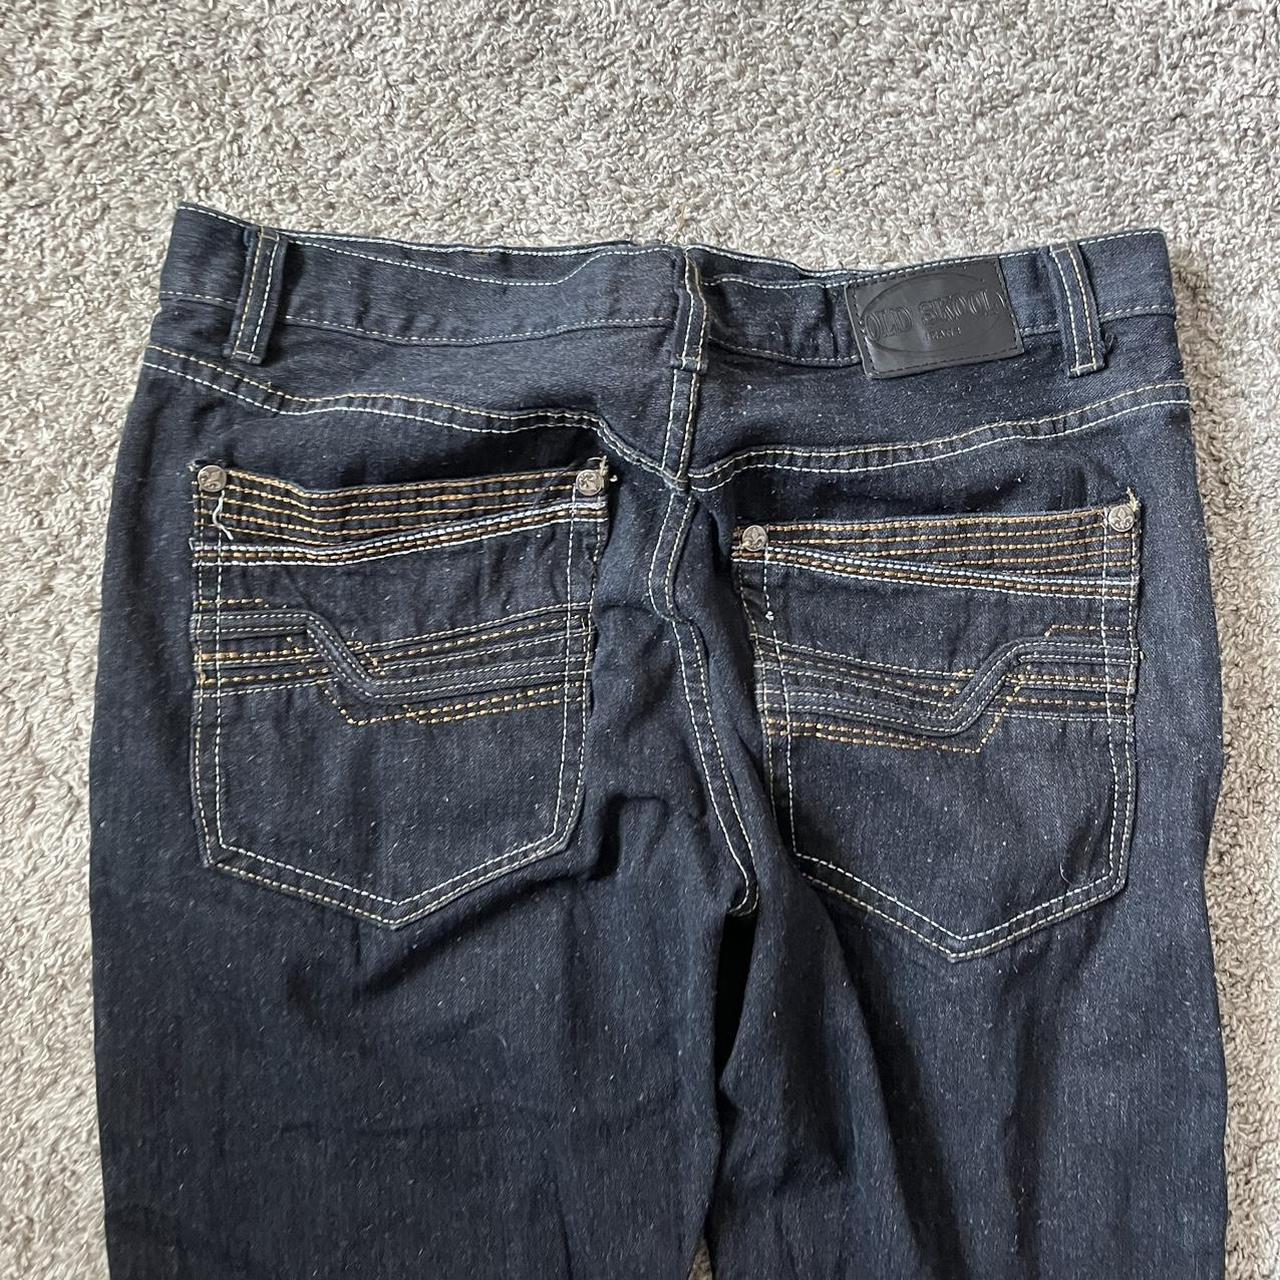 Insane pair of y2k old skool jeans, dm me with any... - Depop